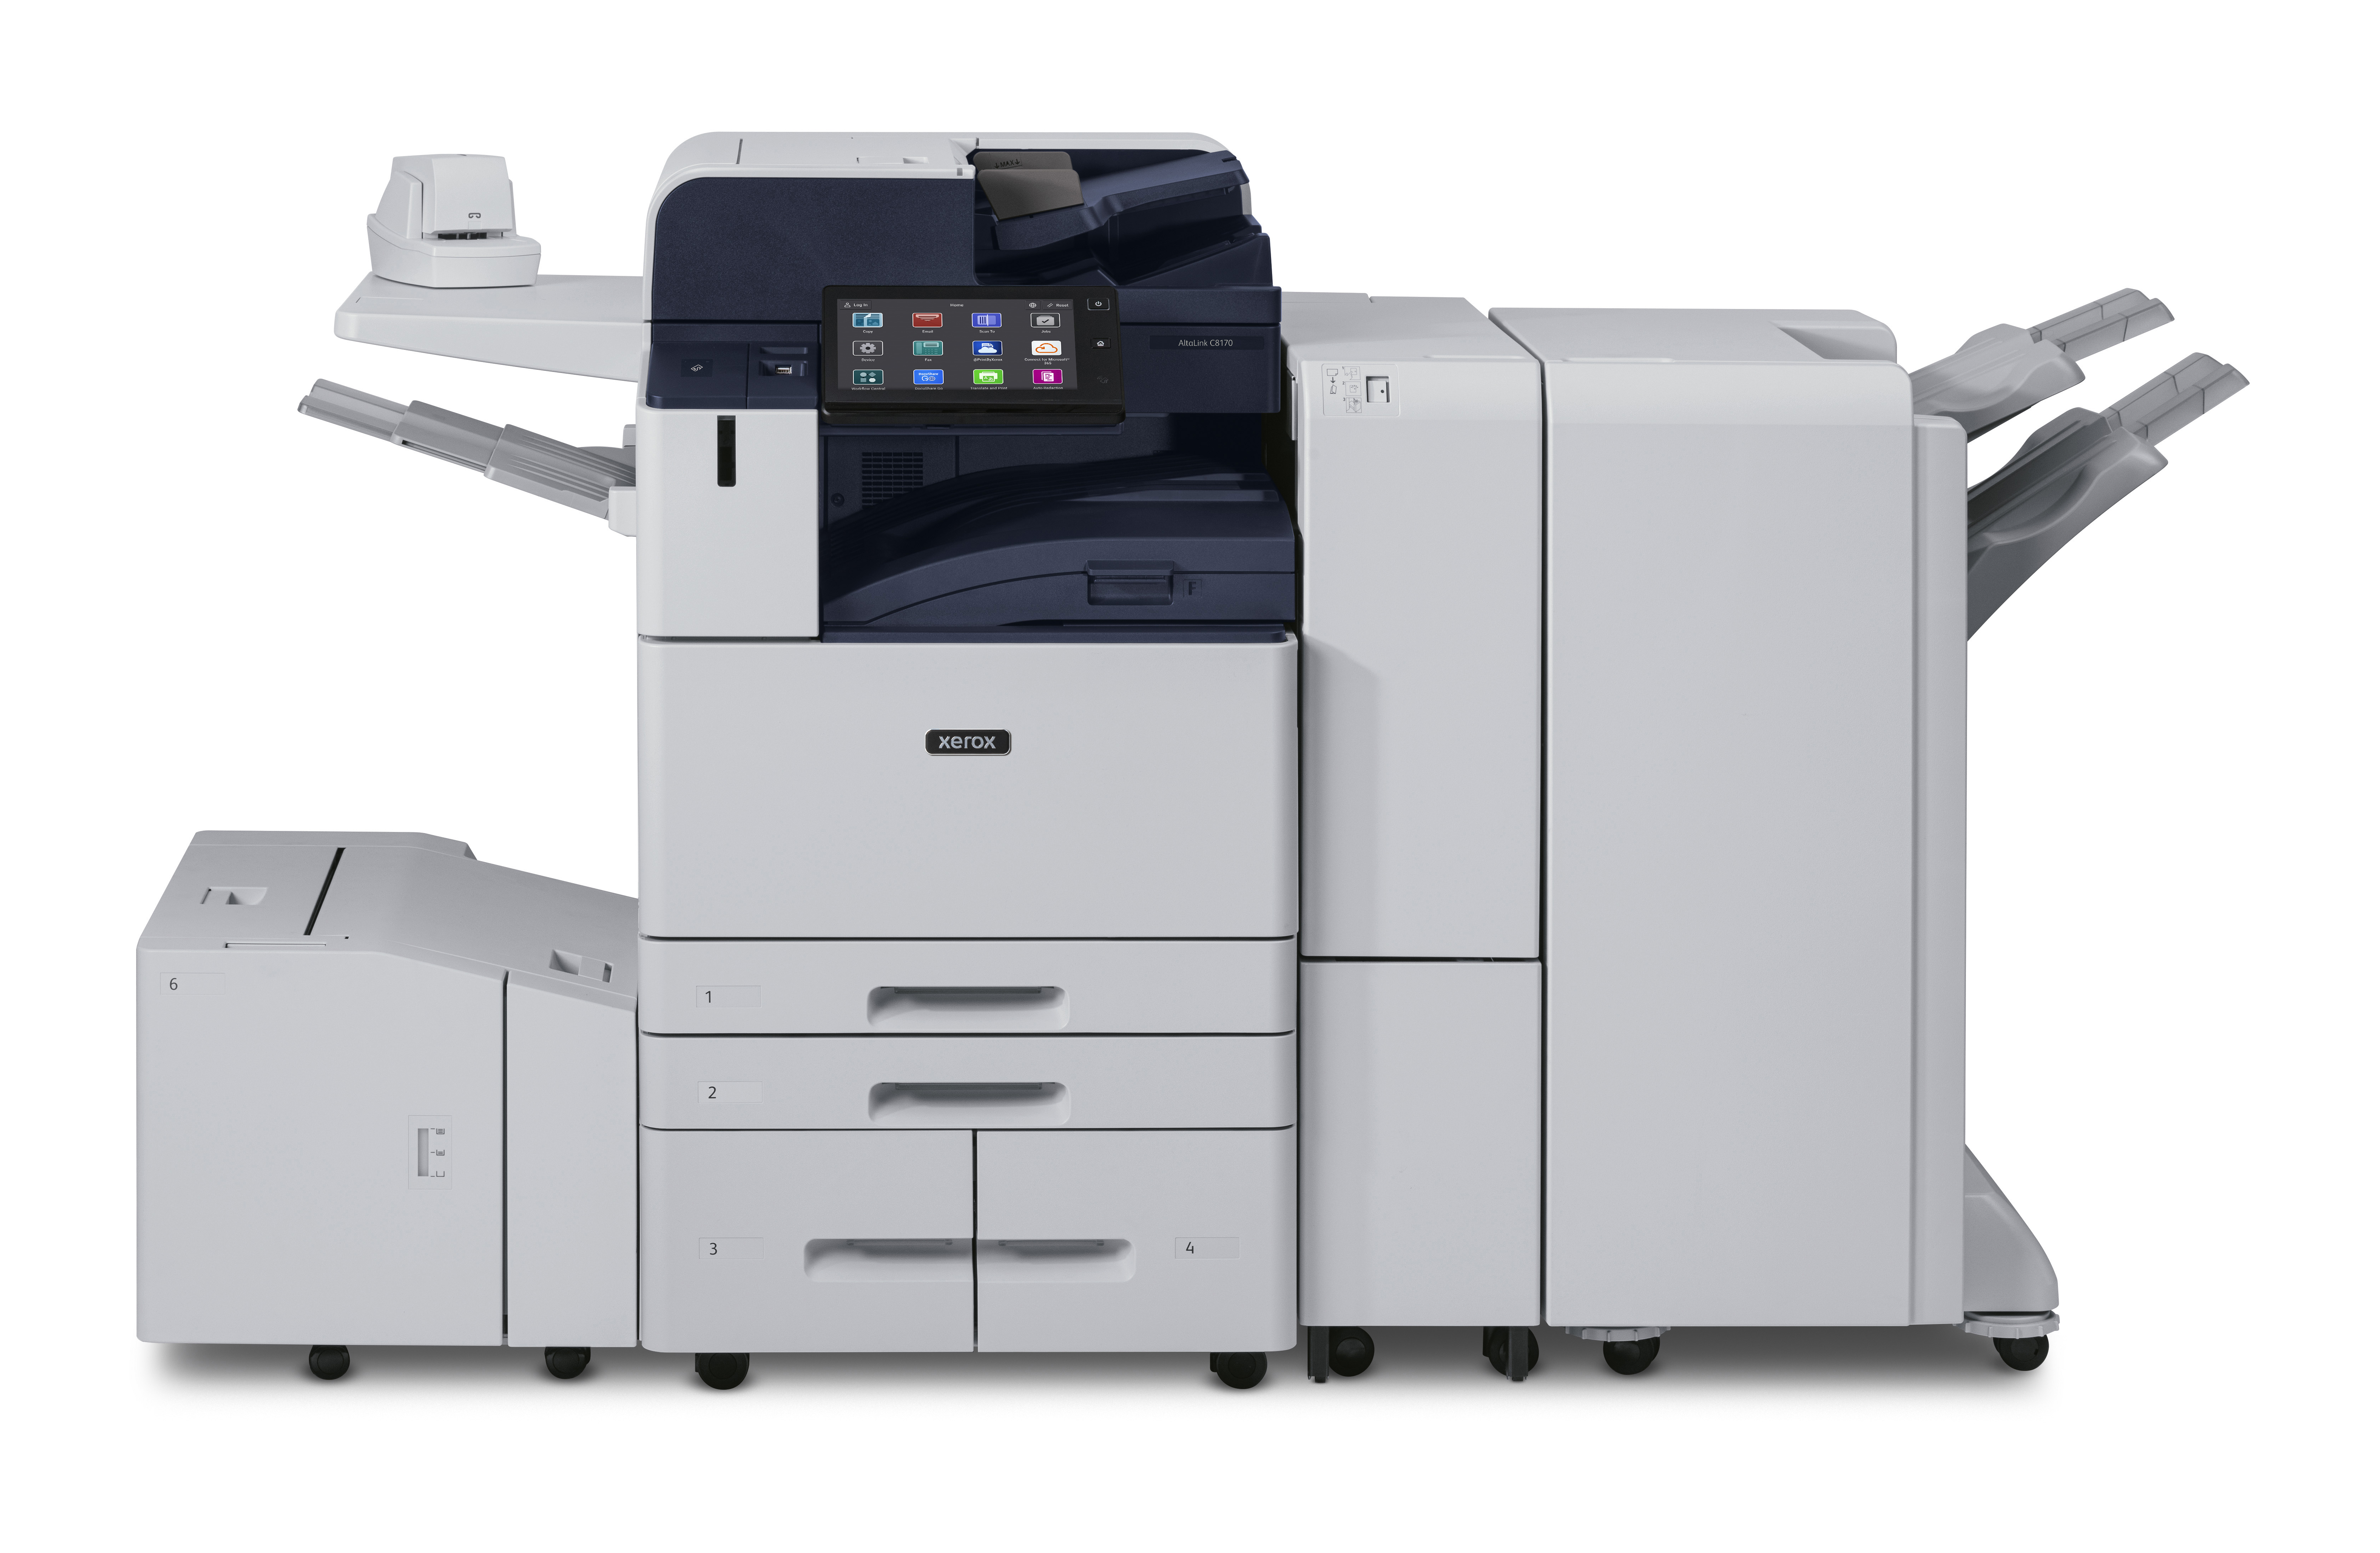 🔸 Família Xerox AltaLink C8100 🔸 Impressão de alto volume. 